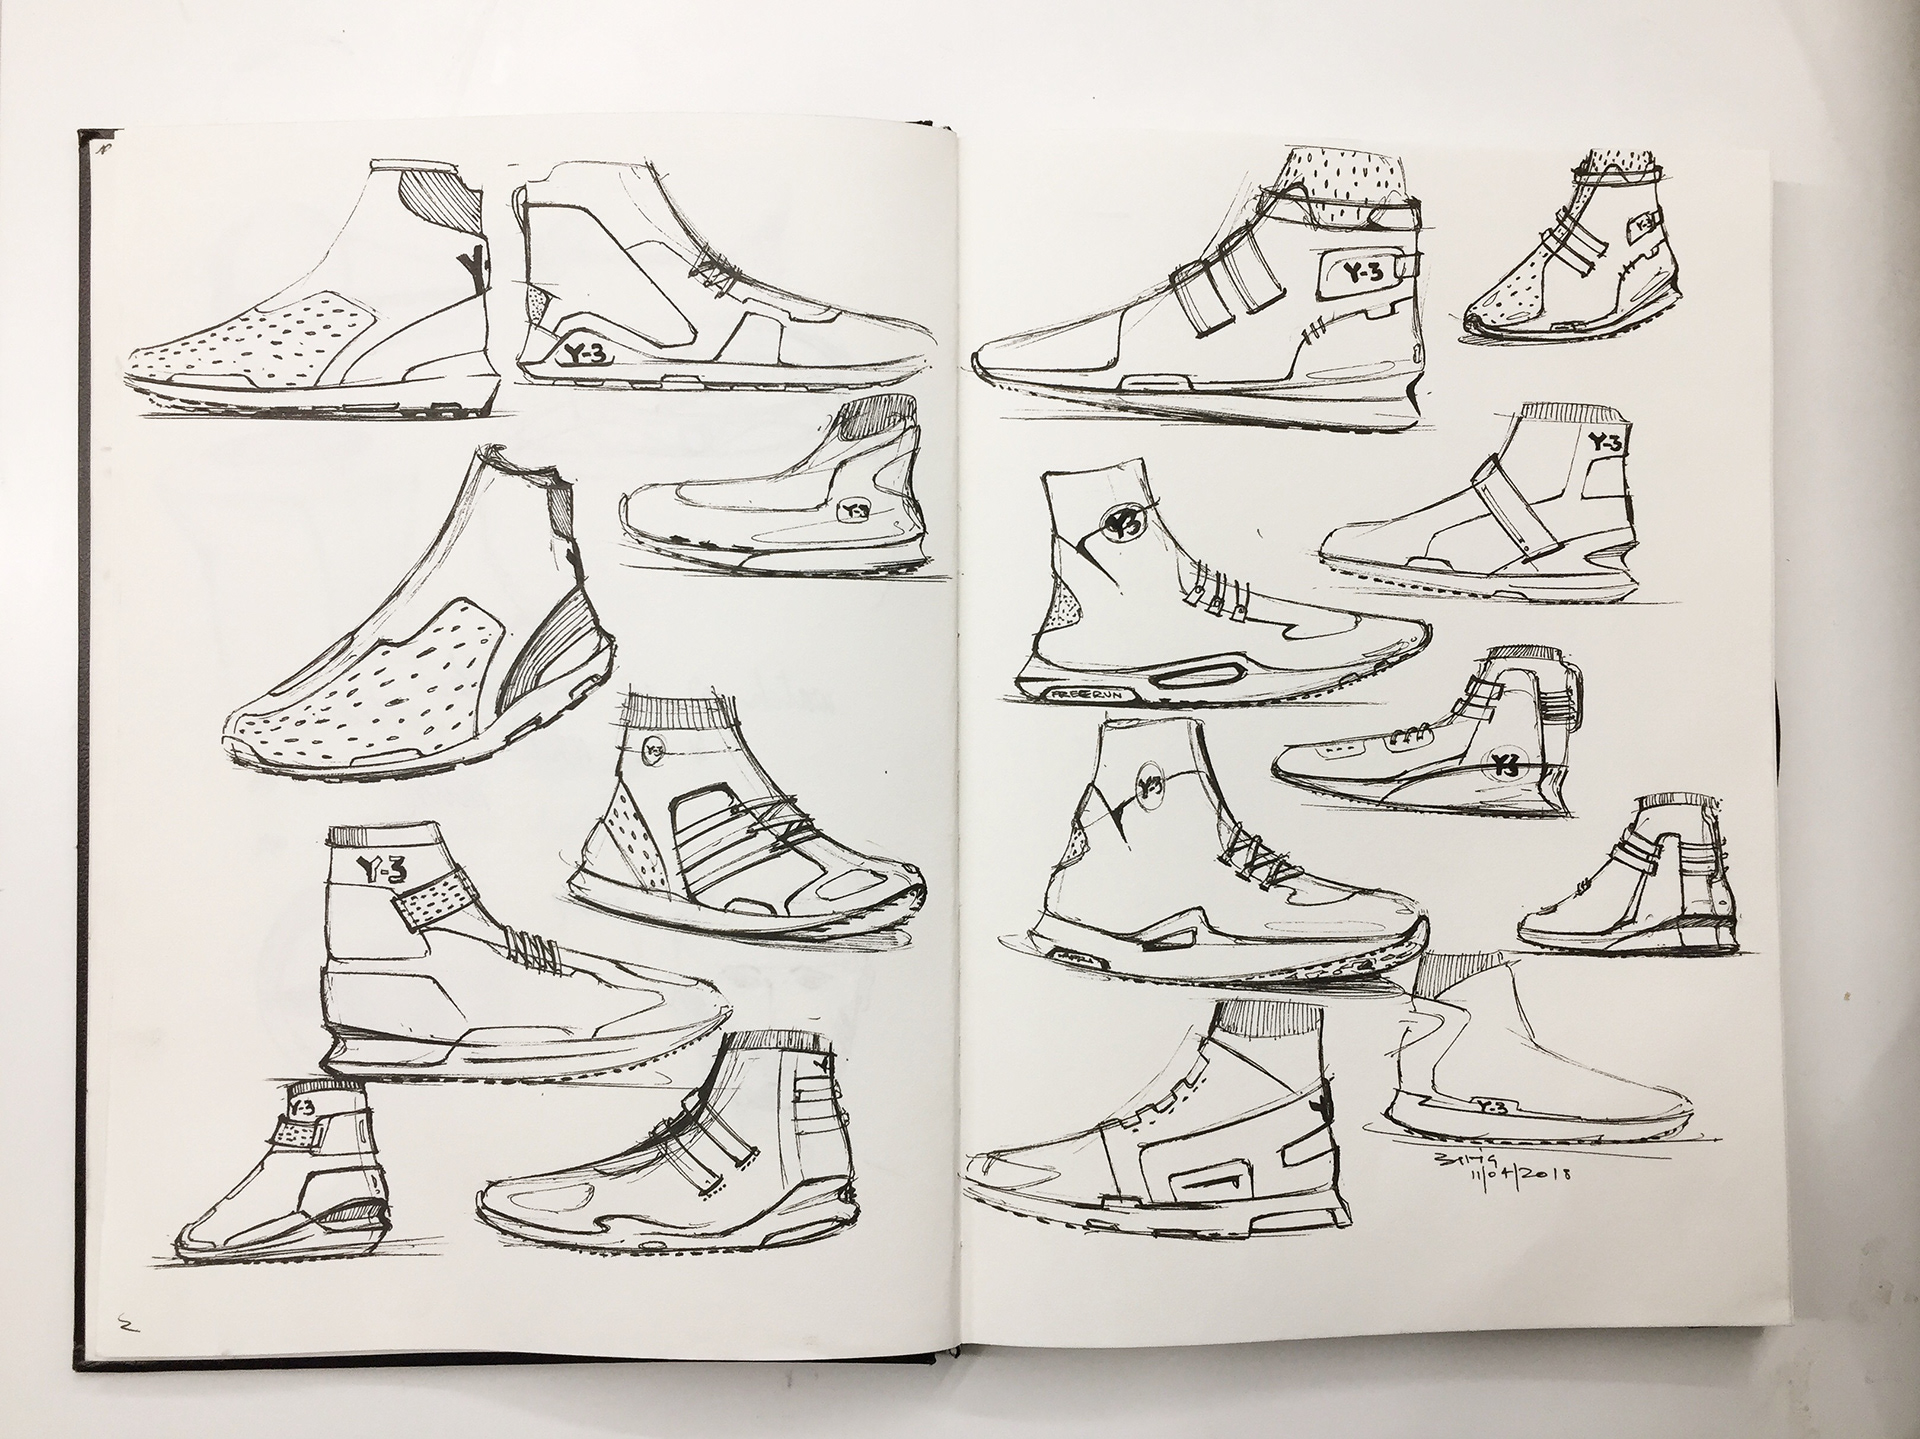 【运动鞋草图合集】闲暇时间画草图了解产品的形式,功能和细节